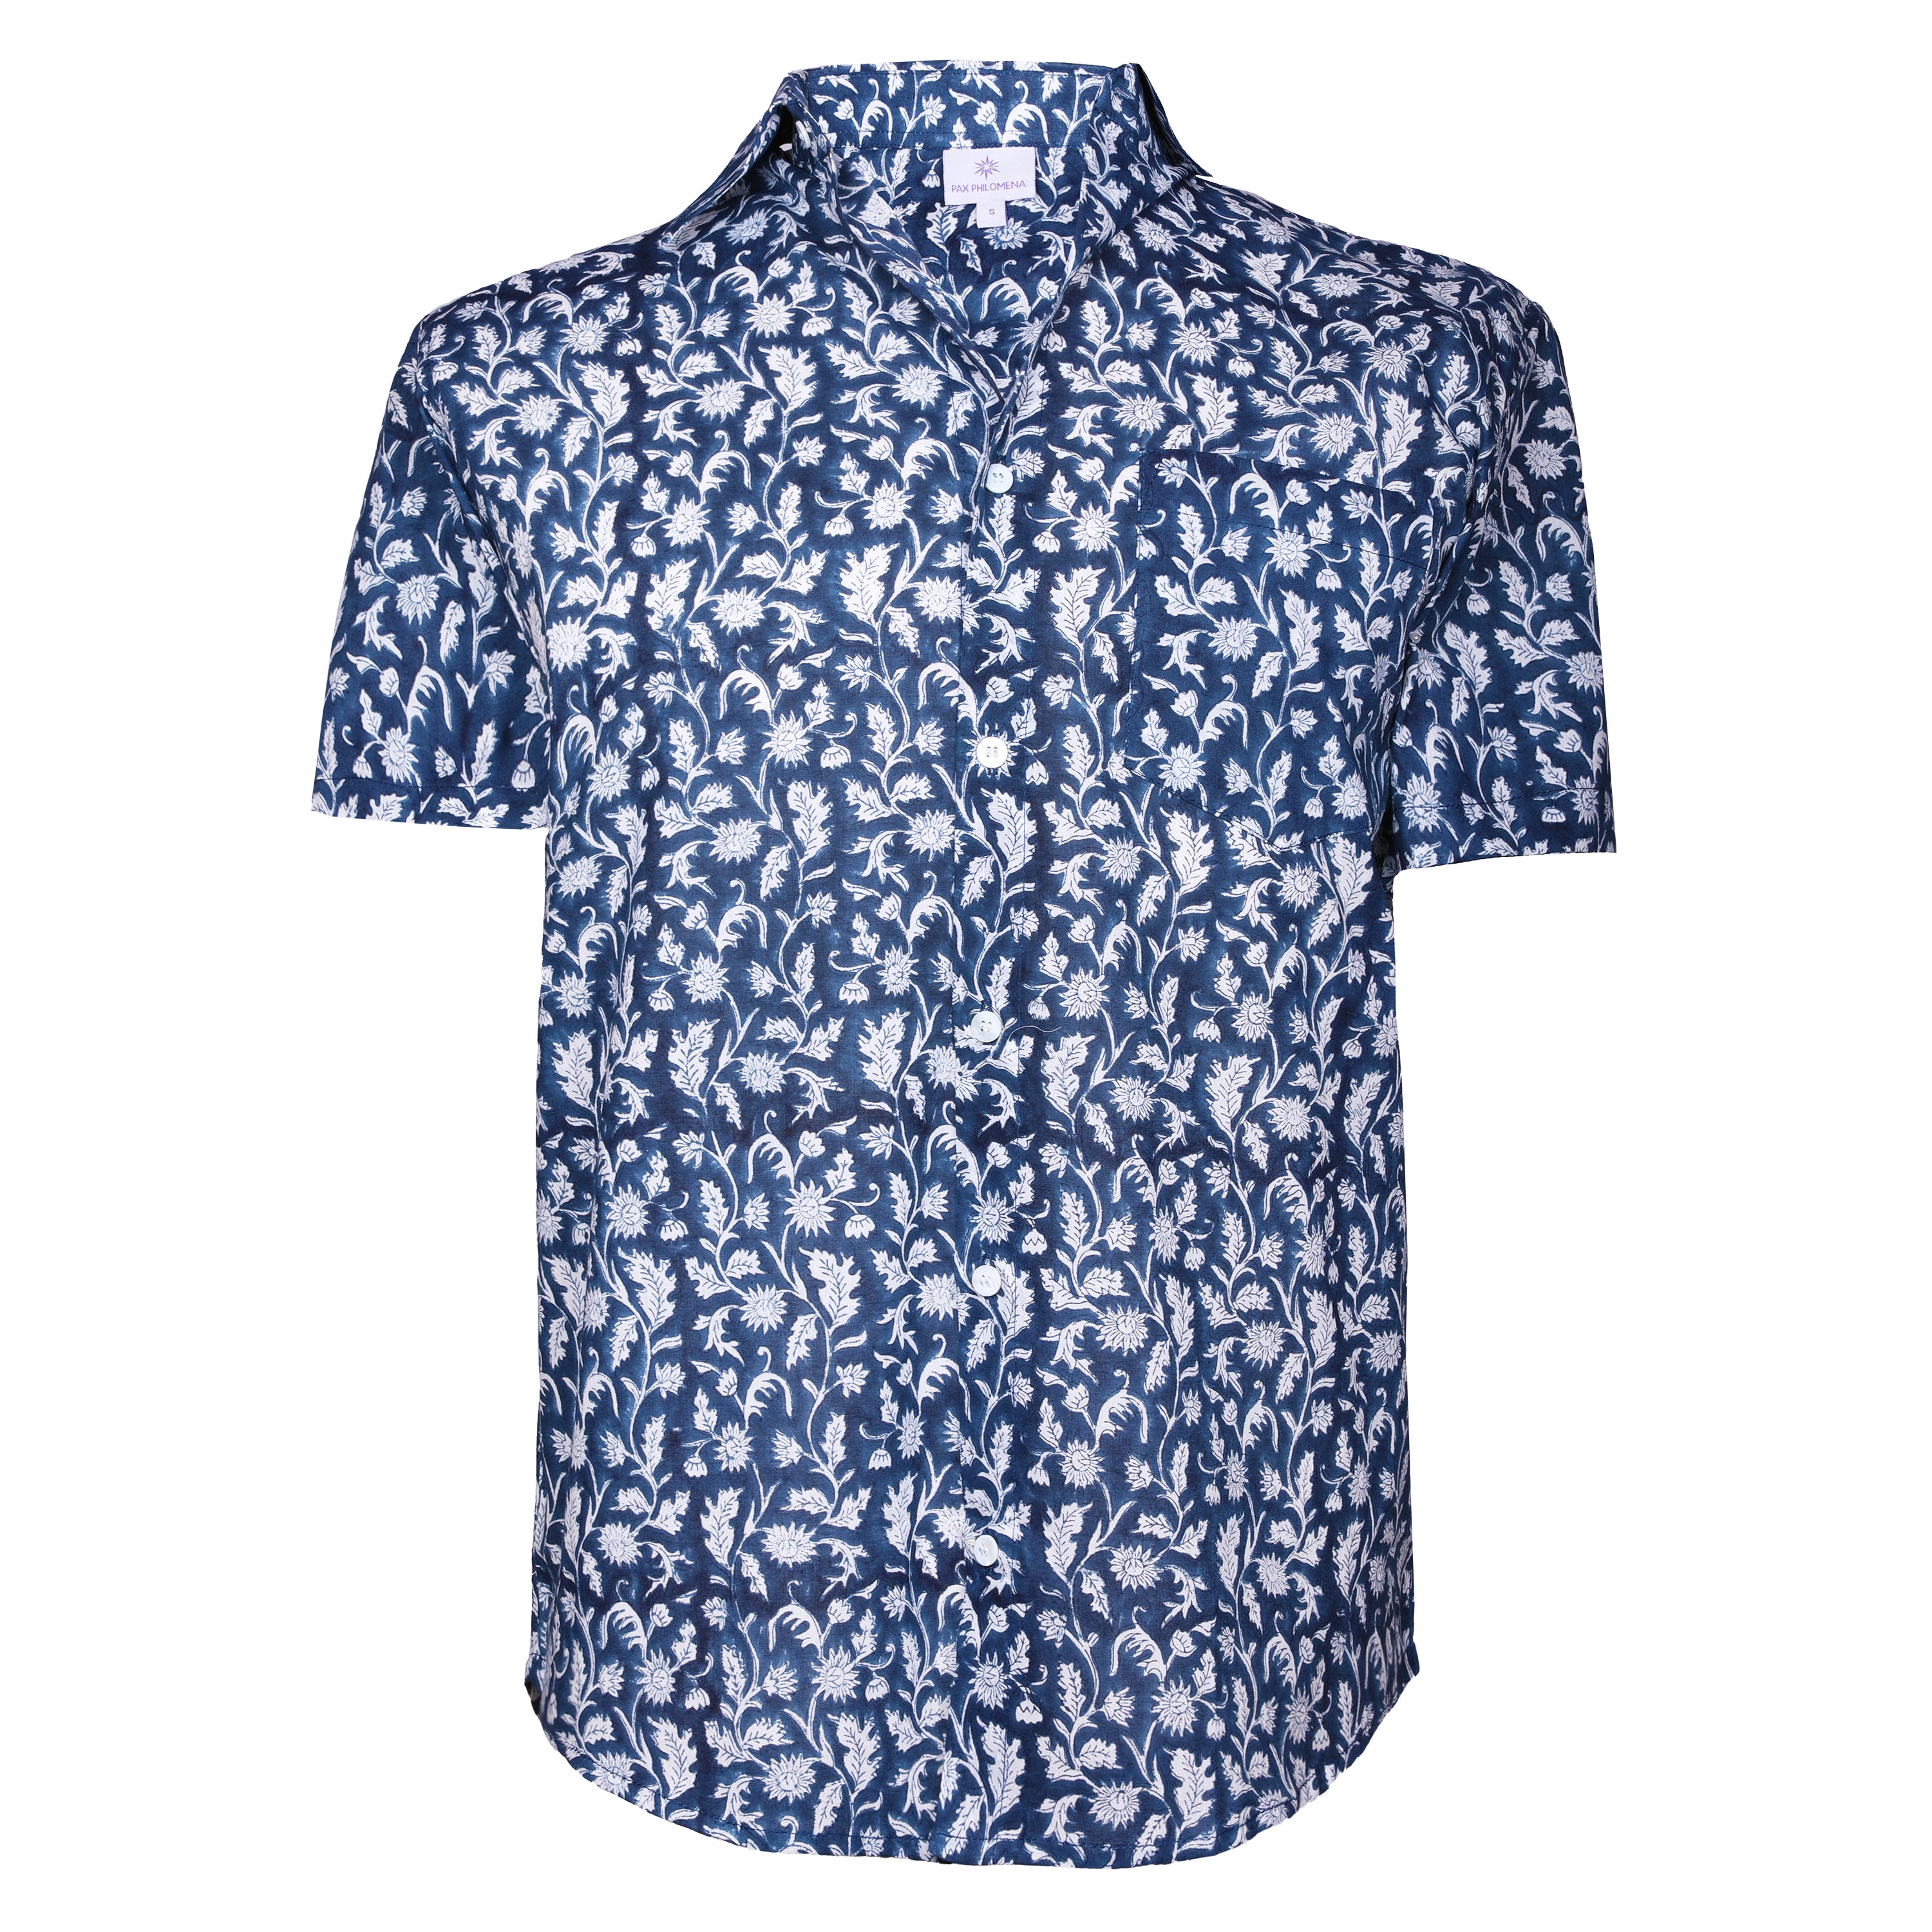 Chandra Blue Floral Men's Short Sleeve Shirt